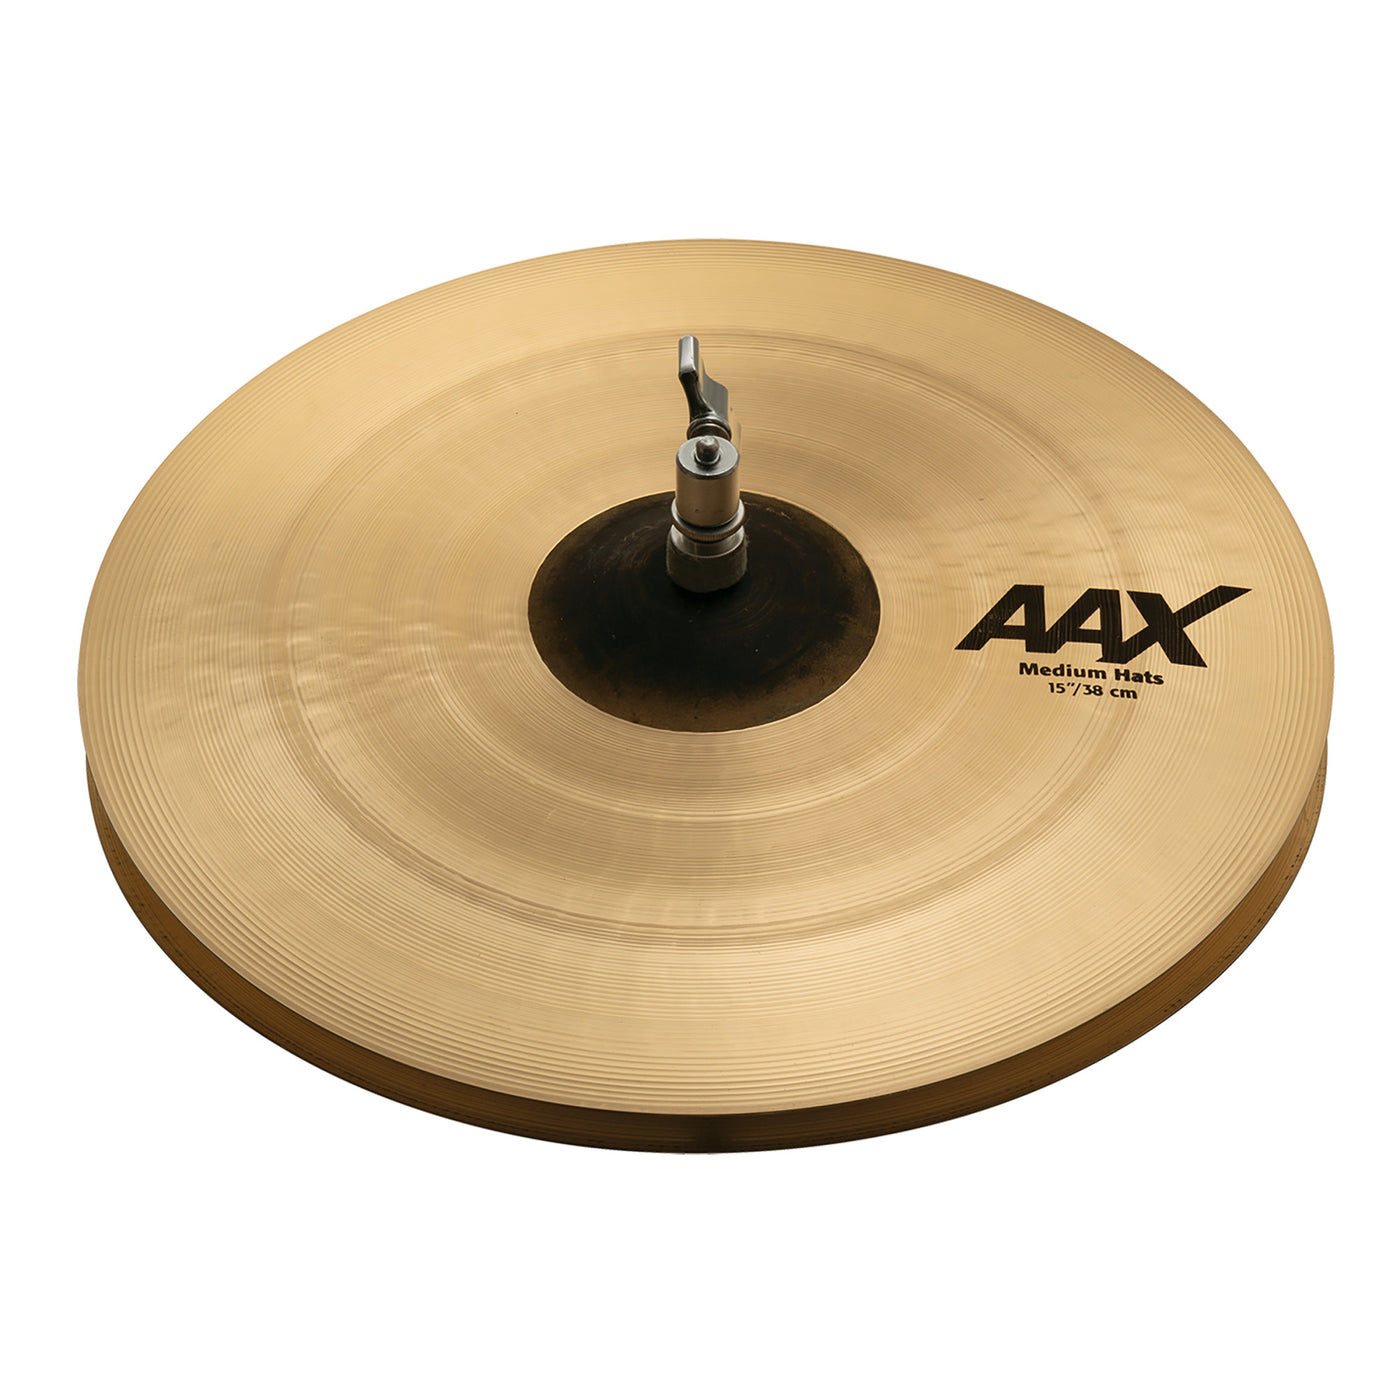 Sabian 15" AAX Medium Hi-Hat Cymbals